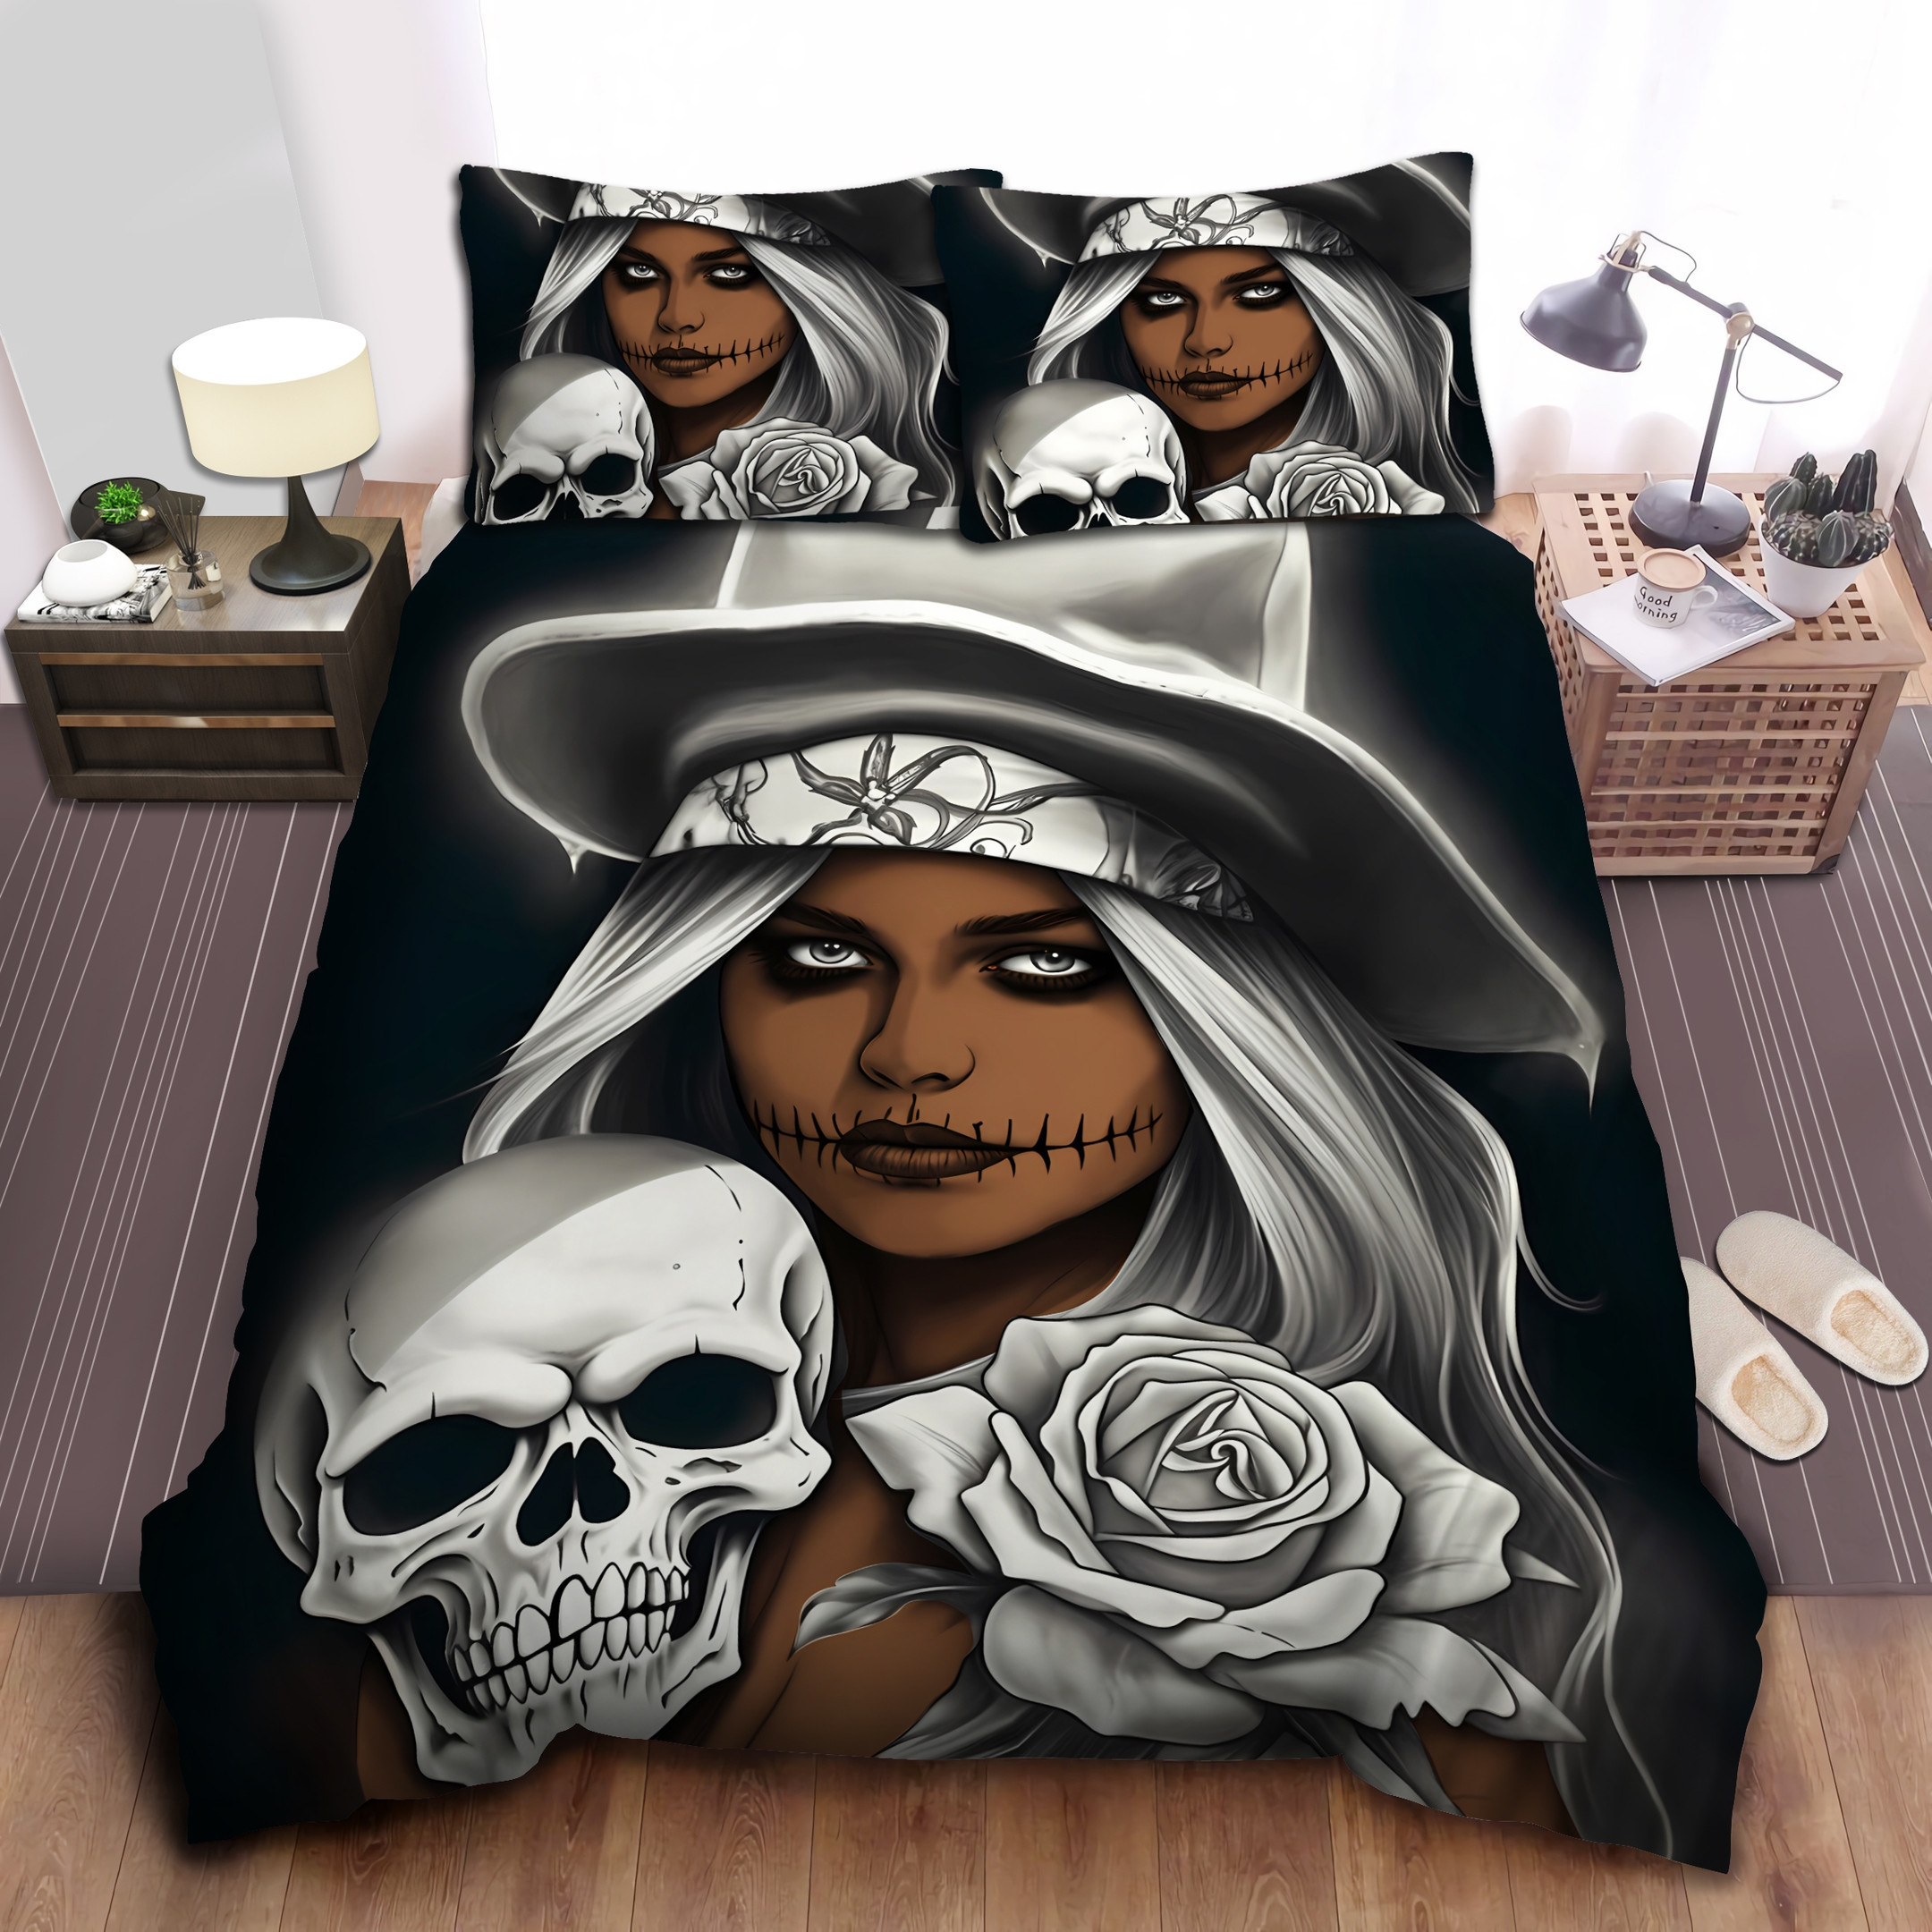 Black And White Skull And Girl Duvet Cover Bedding Set